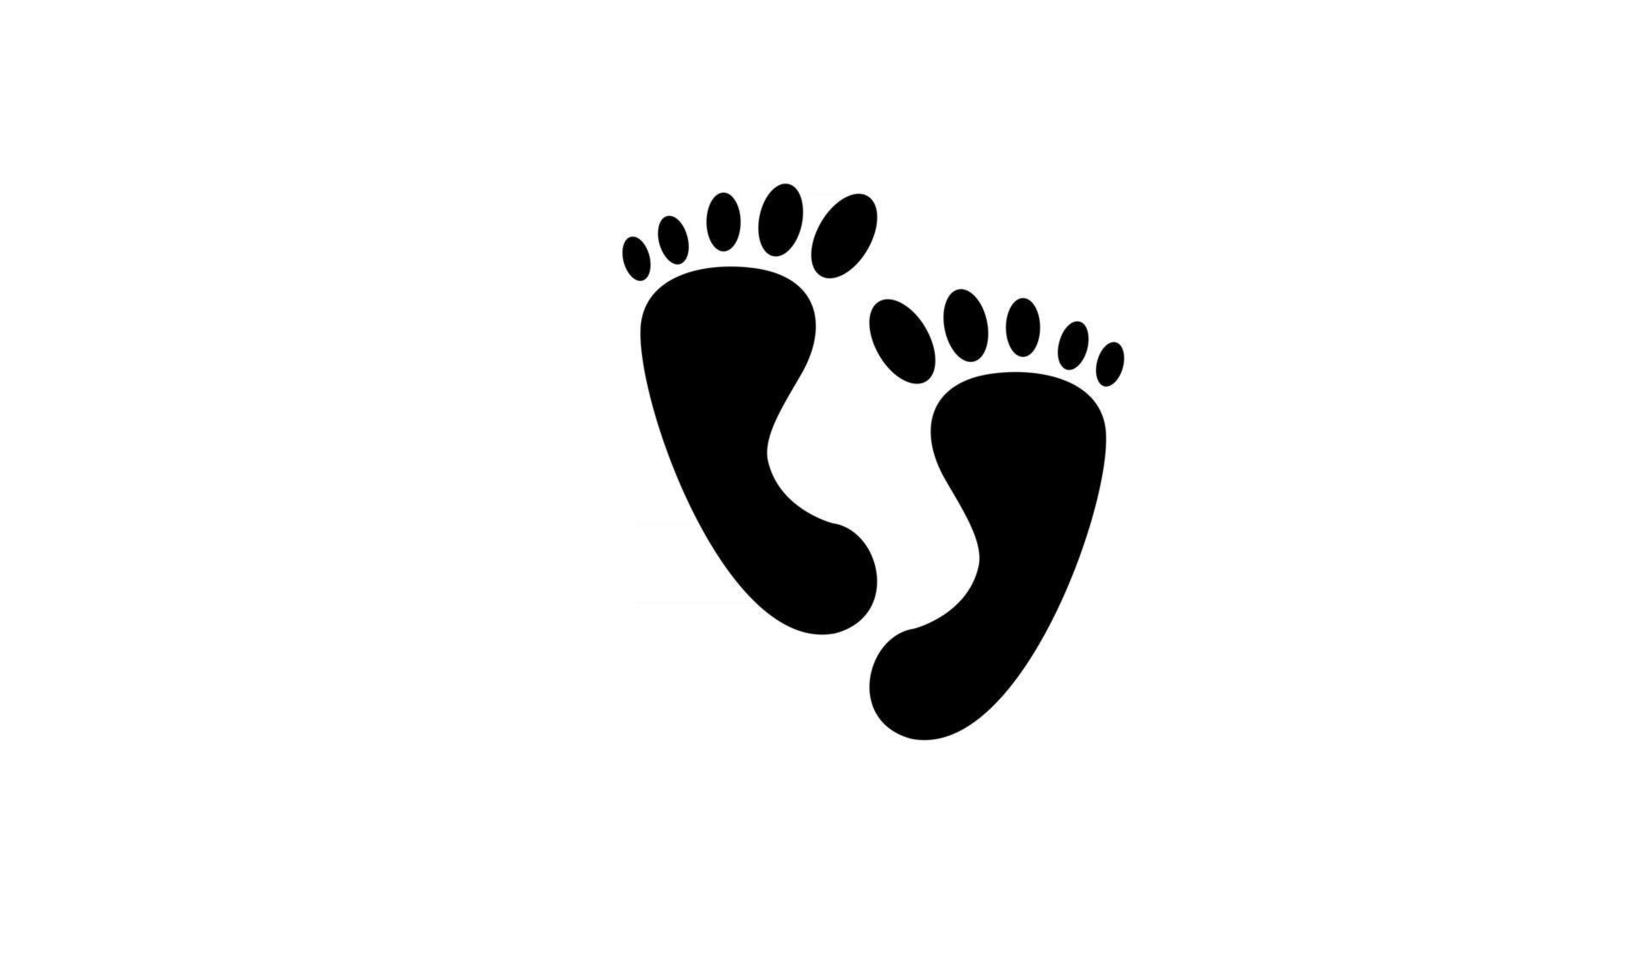 Footprint a piedi nudi passo silhouette vettore icona nera design semplice